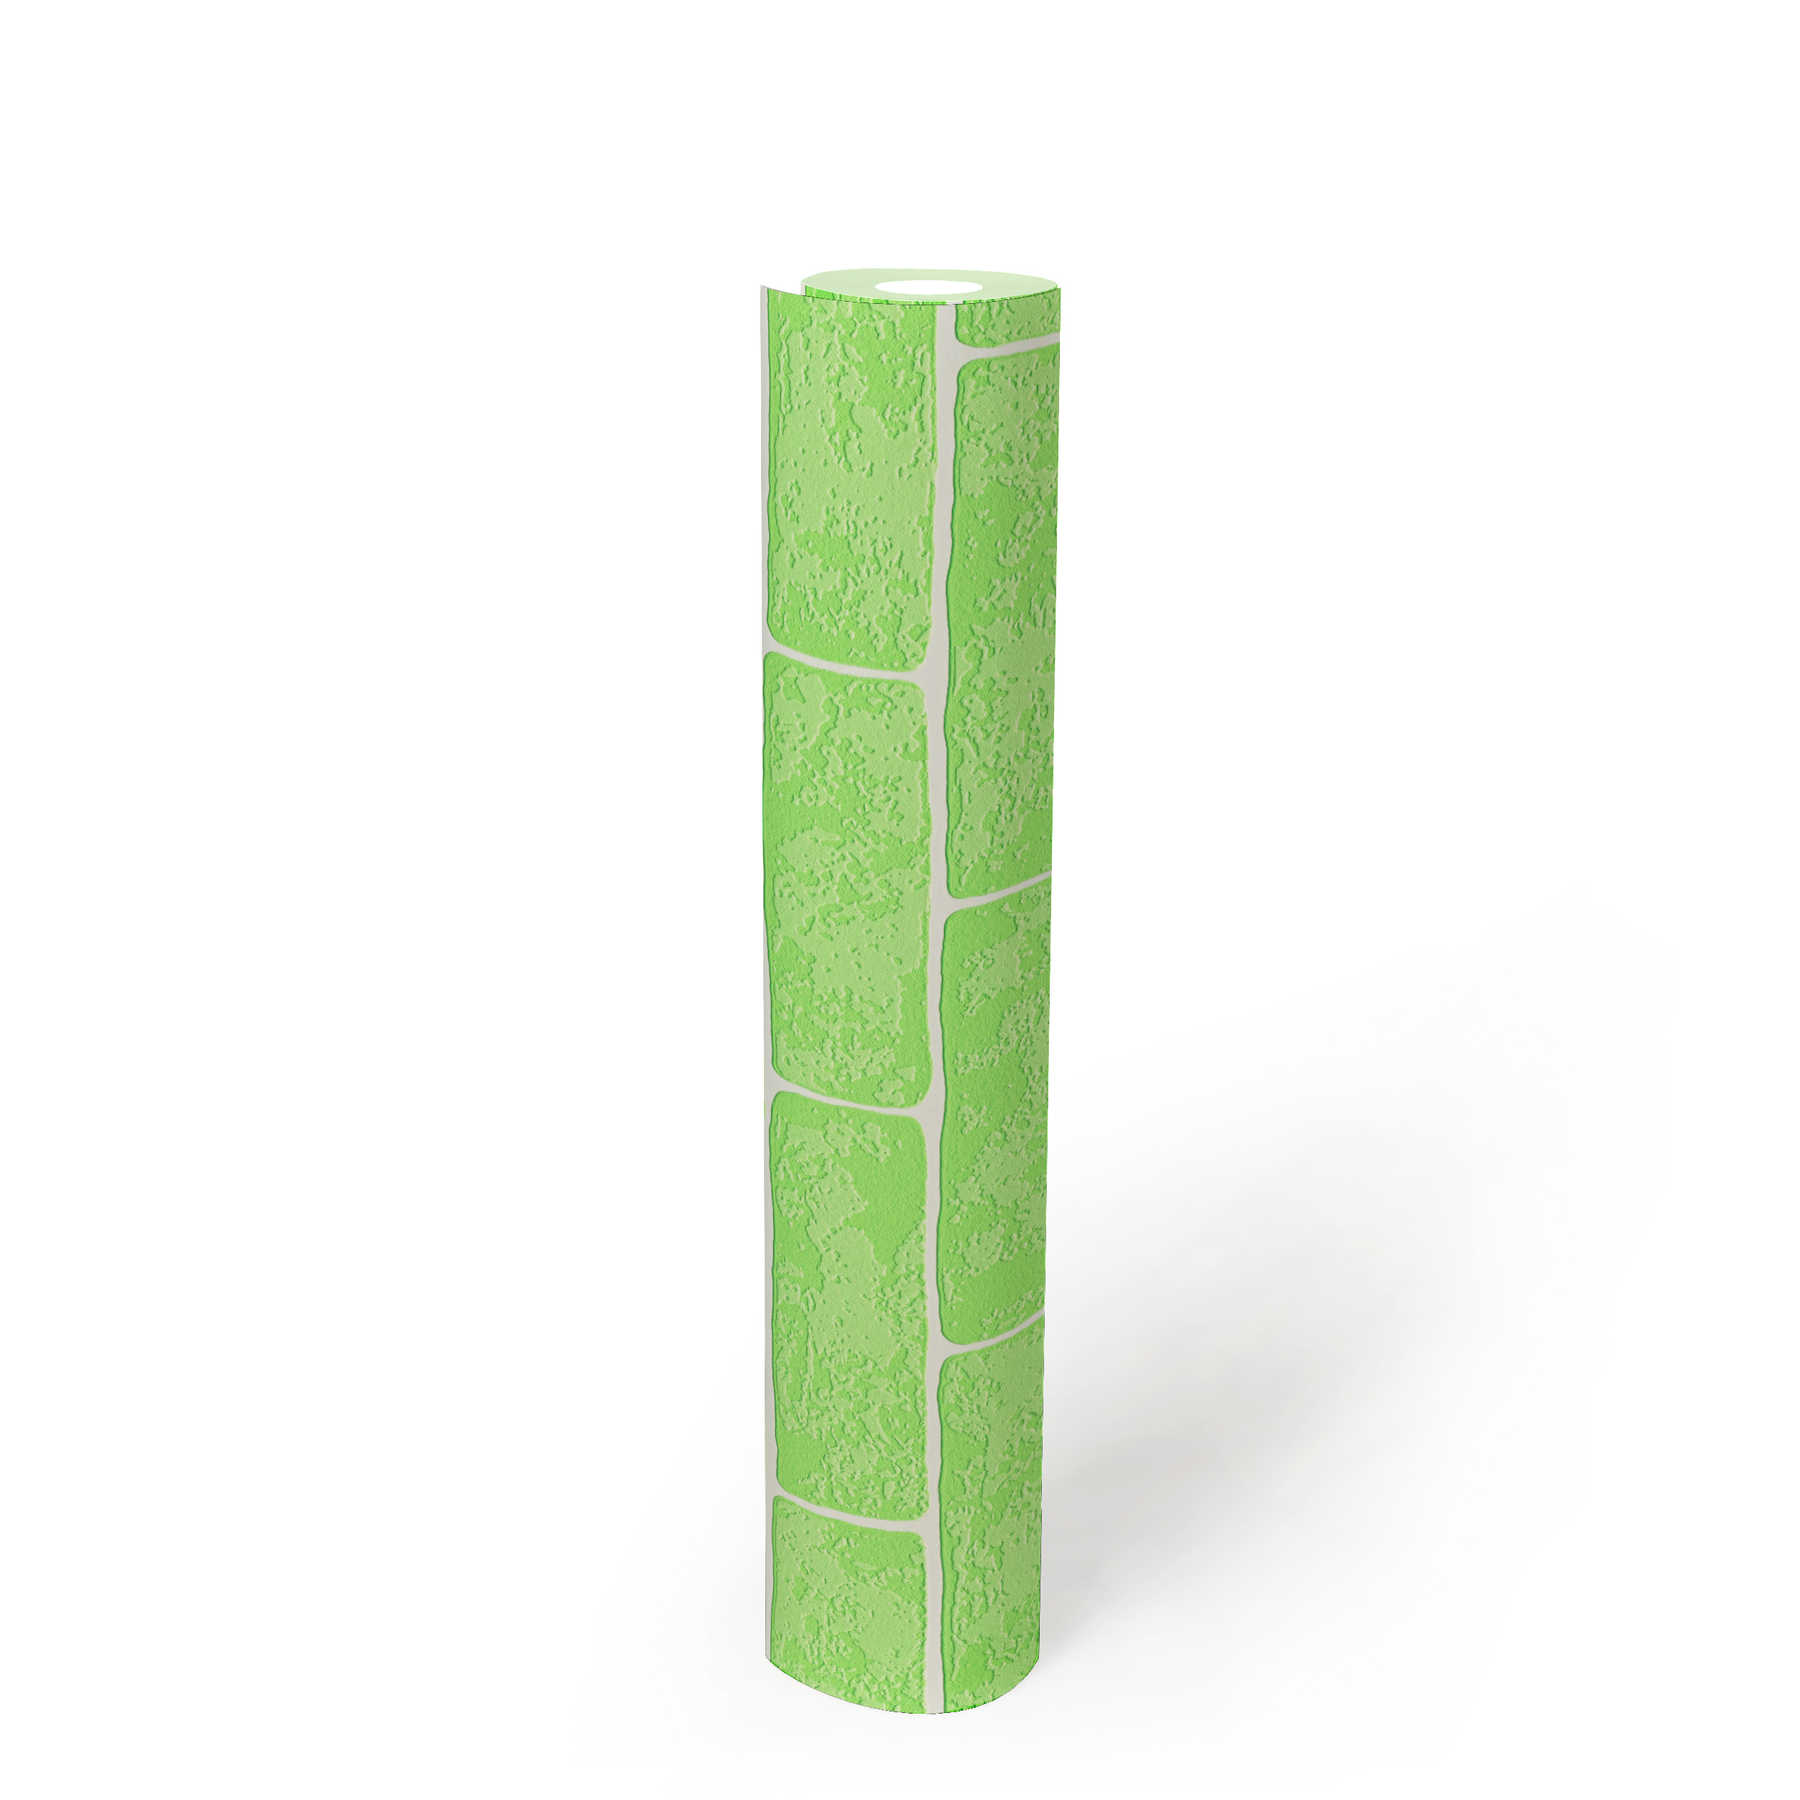             Papel pintado de piedra no tejida con estructura 3D - verde, blanco
        